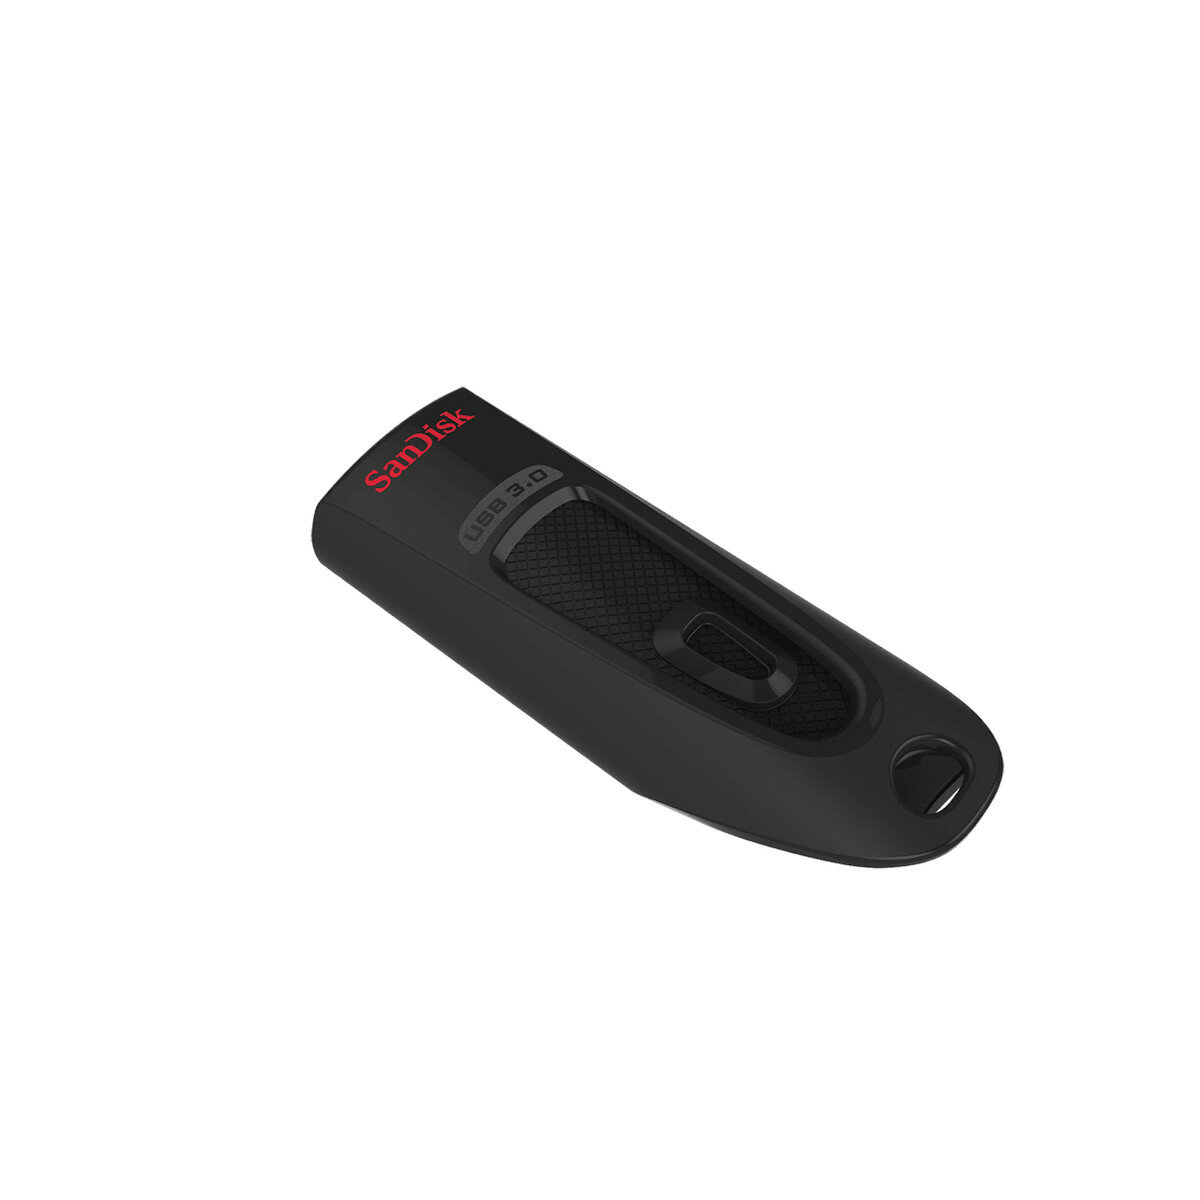 Pendrive SanDisk Ultra USB 3.0 128 GB widoczny tyłem ze schowanym złączem